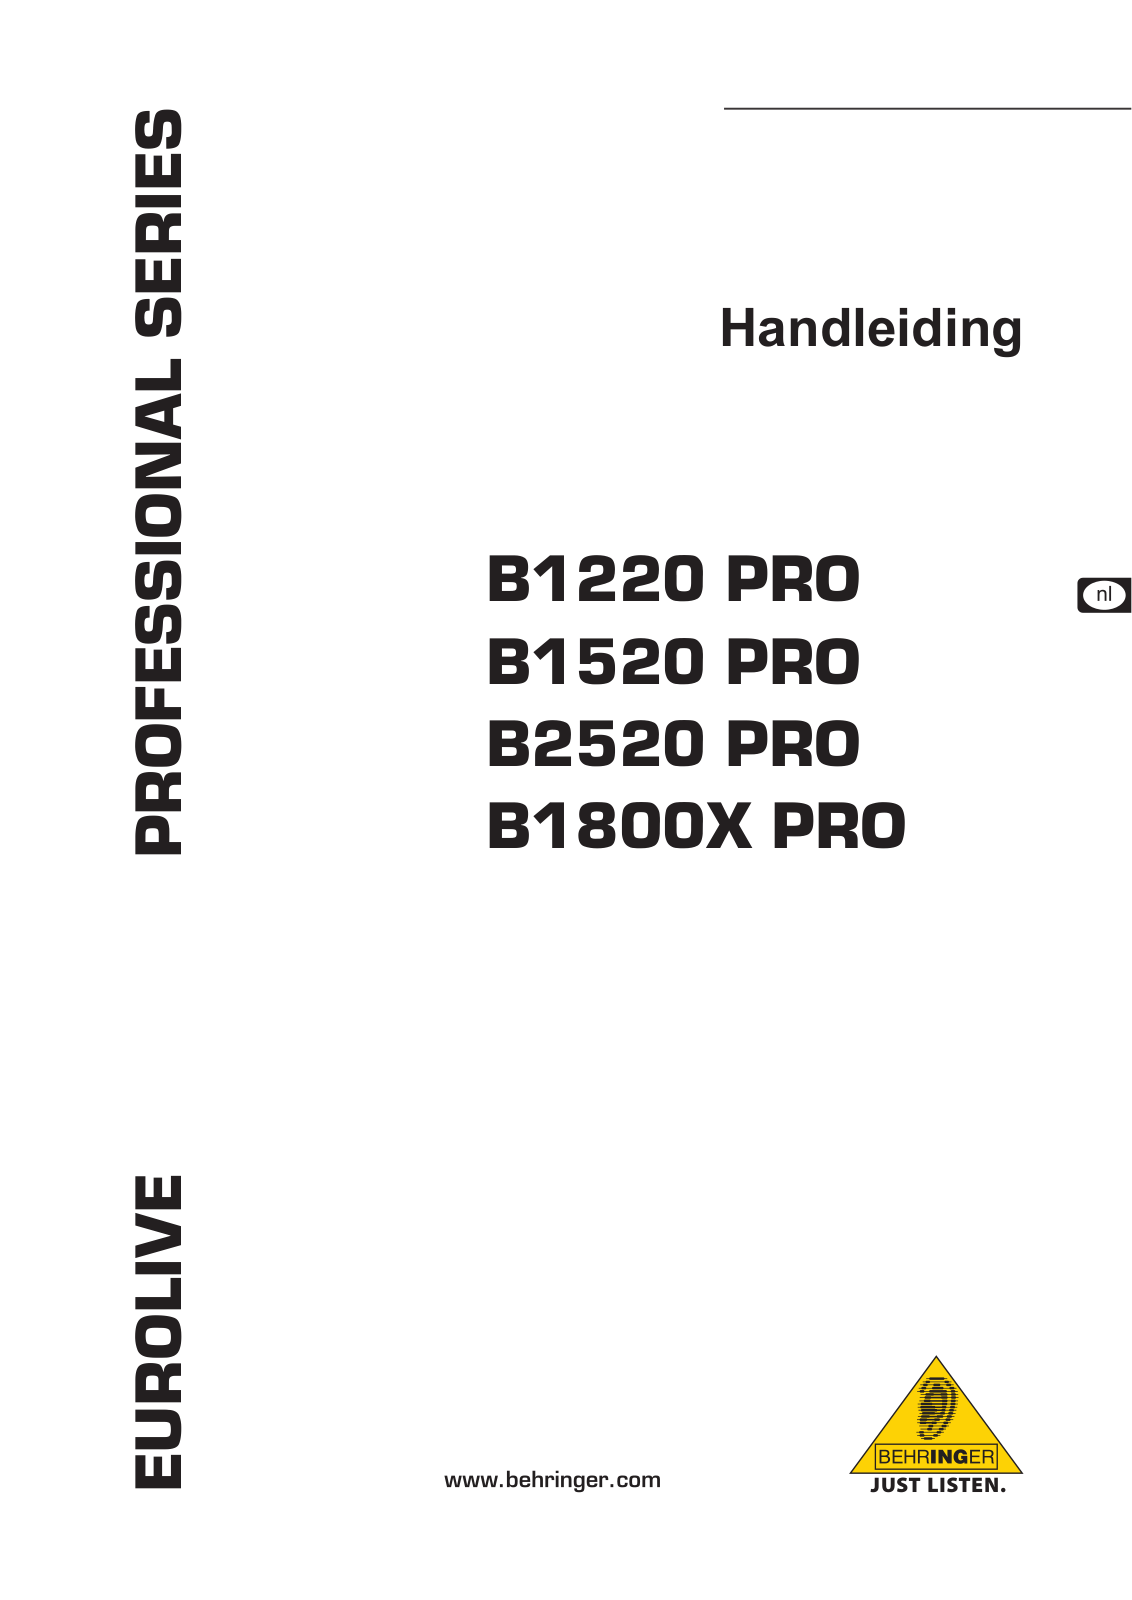 Behringer B2520 PRO, B1800X PRO, B1520 PRO, B1220 PRO Manual